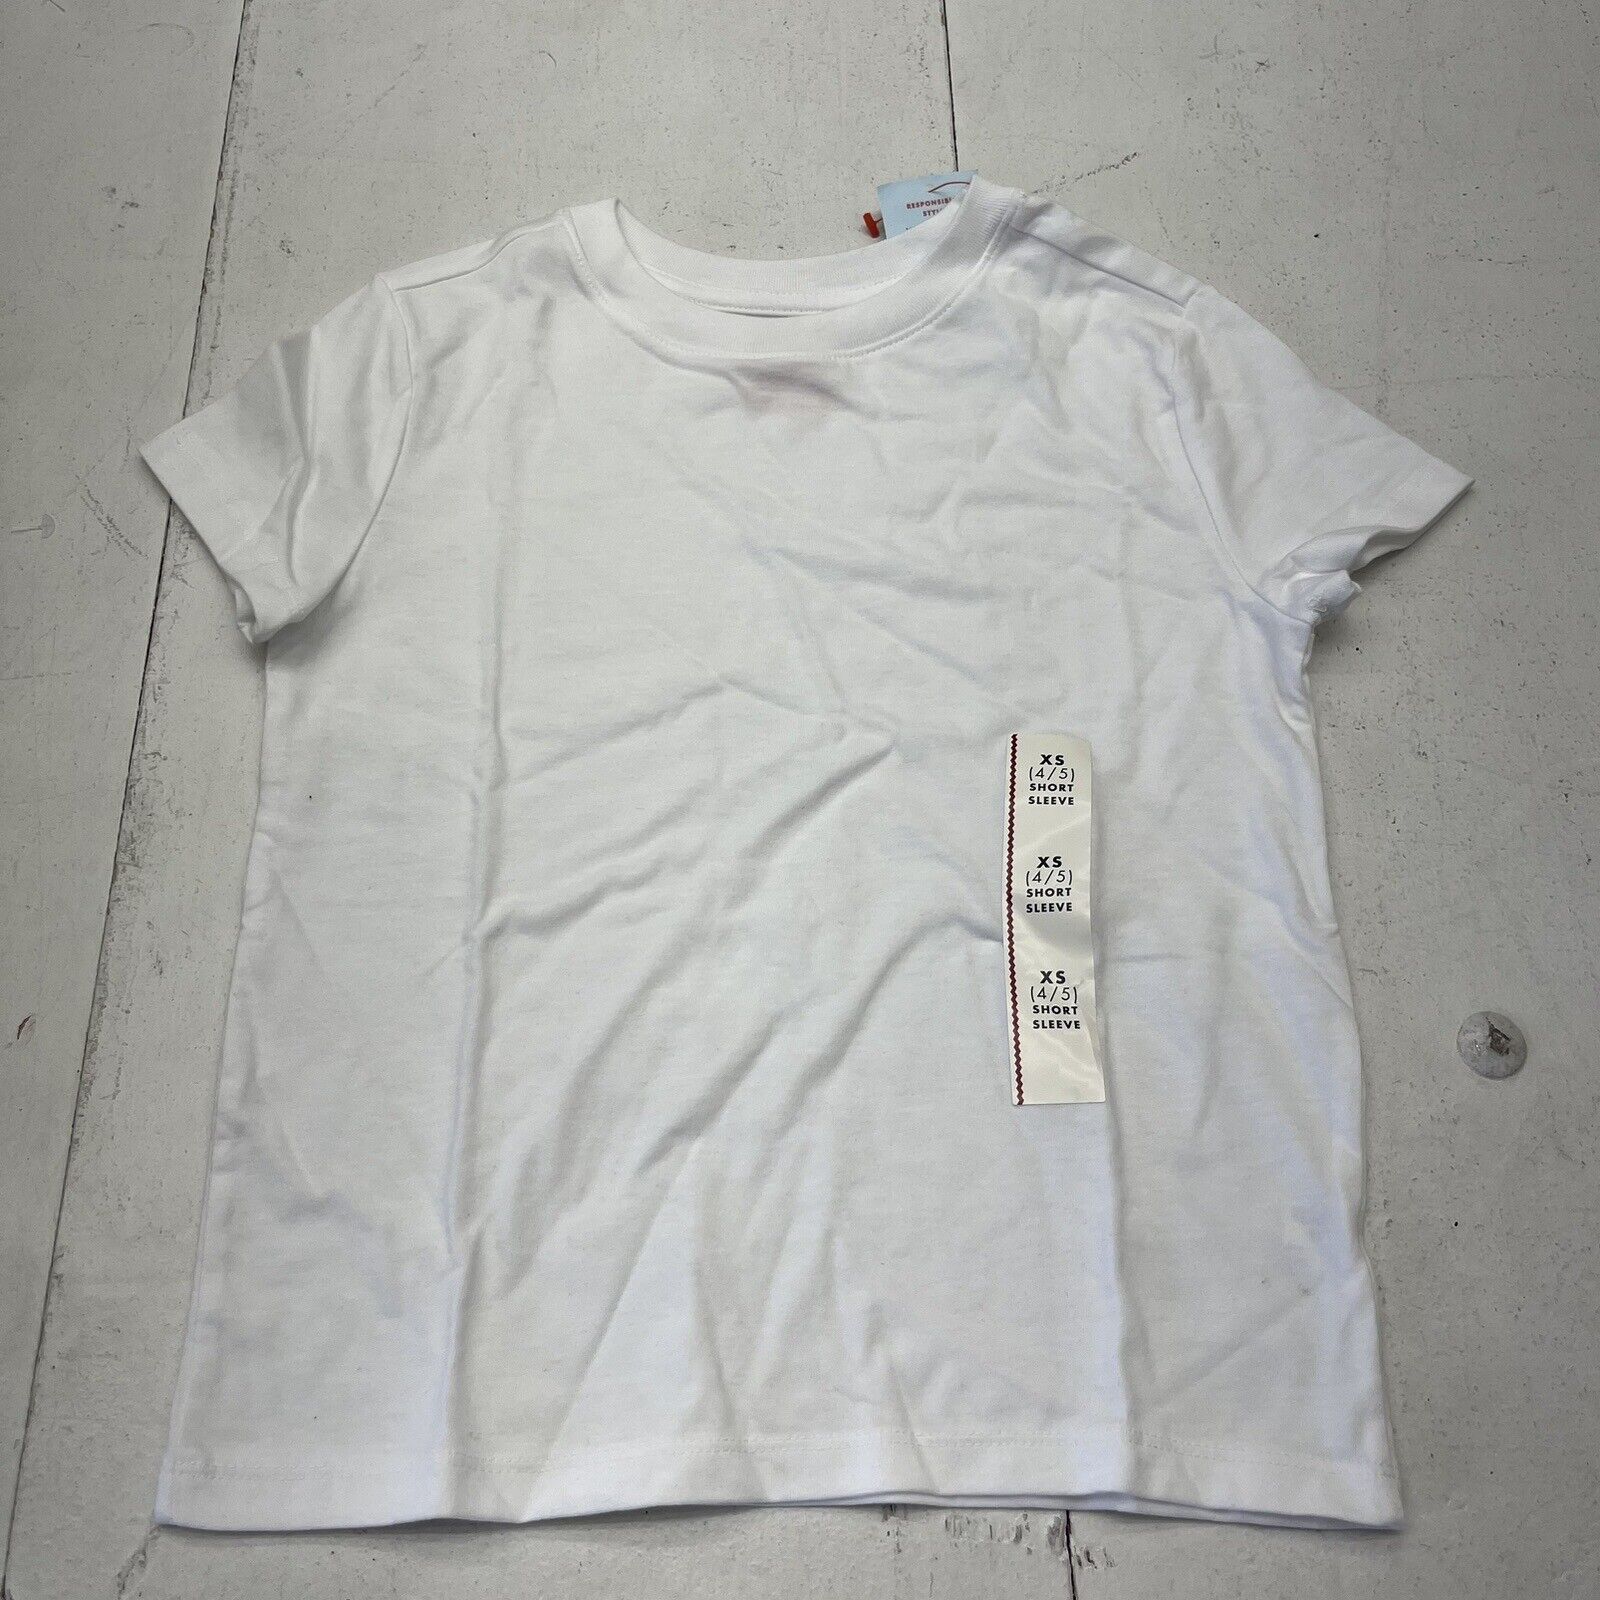 Cat & Jack White Basic Short Sleeve T-Shirt Boys Size XS NEW